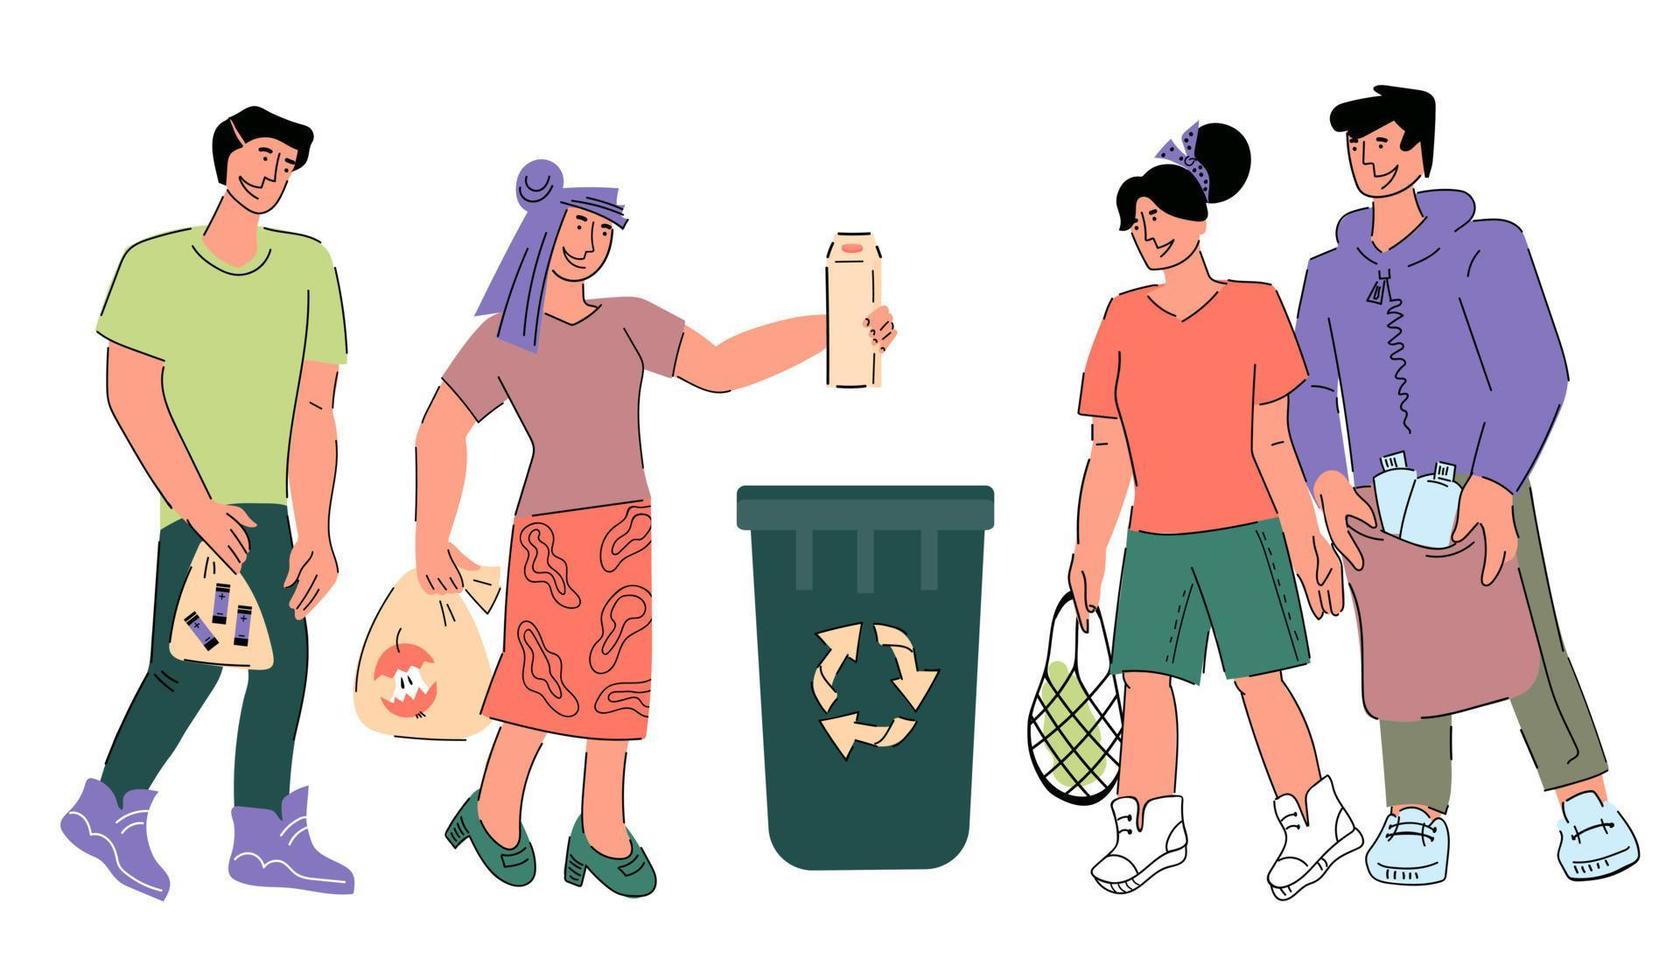 conceito de economia de ambiente ecológico de reciclagem de resíduos. pessoas classificando resíduos para reutilização e reciclagem, vetor de desenho animado plano isolado.